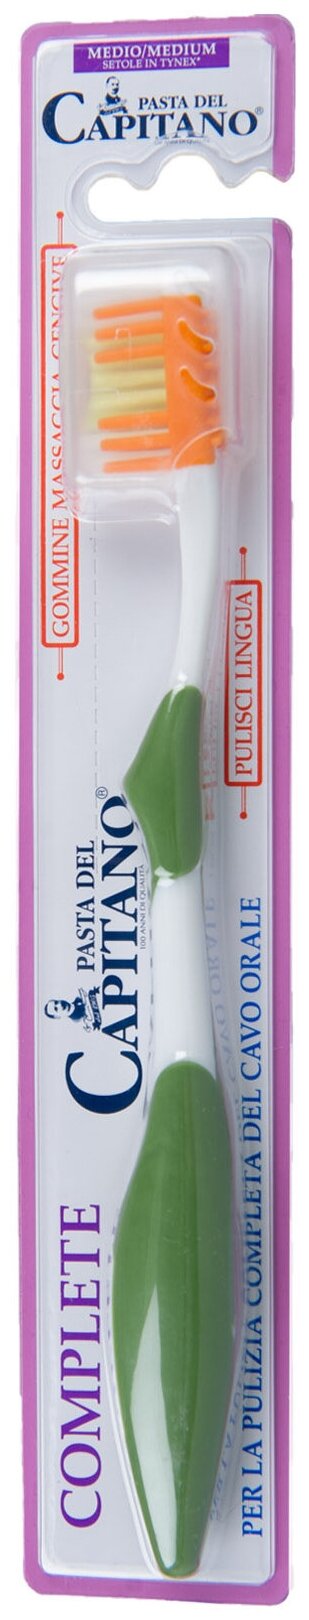 Pasta del Capitano Зубная щетка Complete Medium / Комплексный уход, Средней жесткости, Цвет в ассортименте.